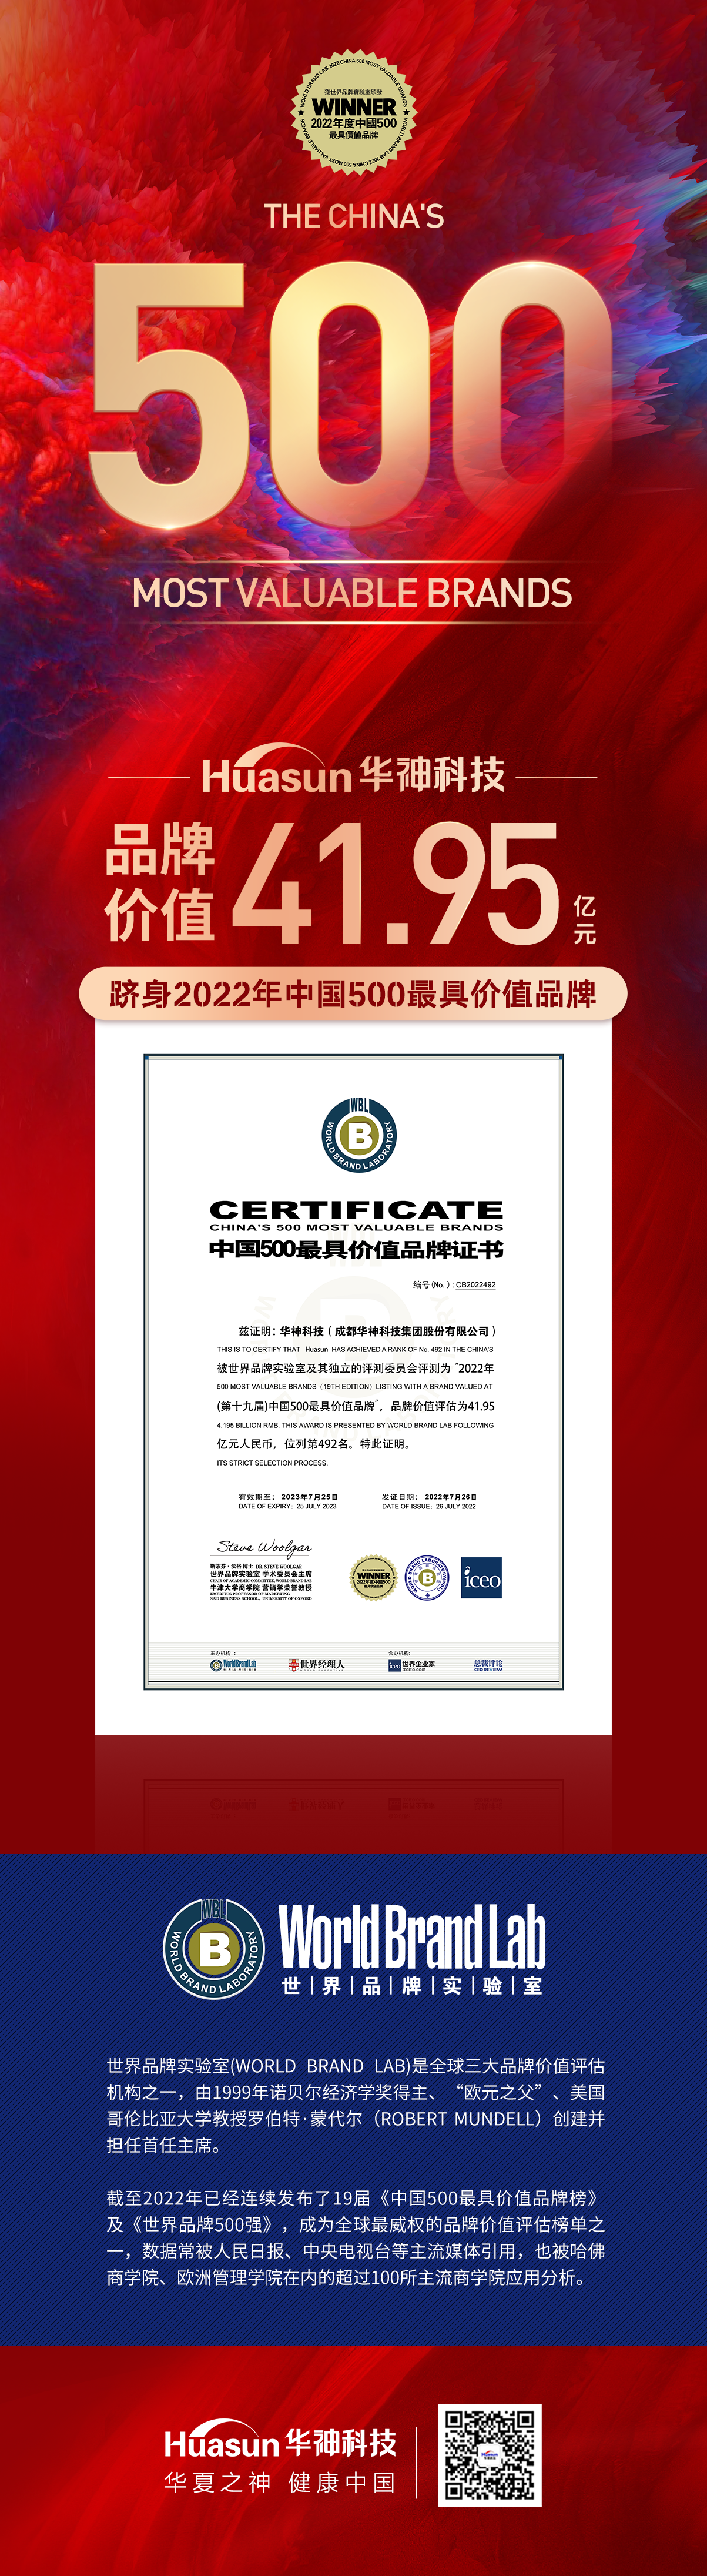 管家婆三肖必中特平台首次荣膺中国500最具价值品牌 品牌价值达41.95亿